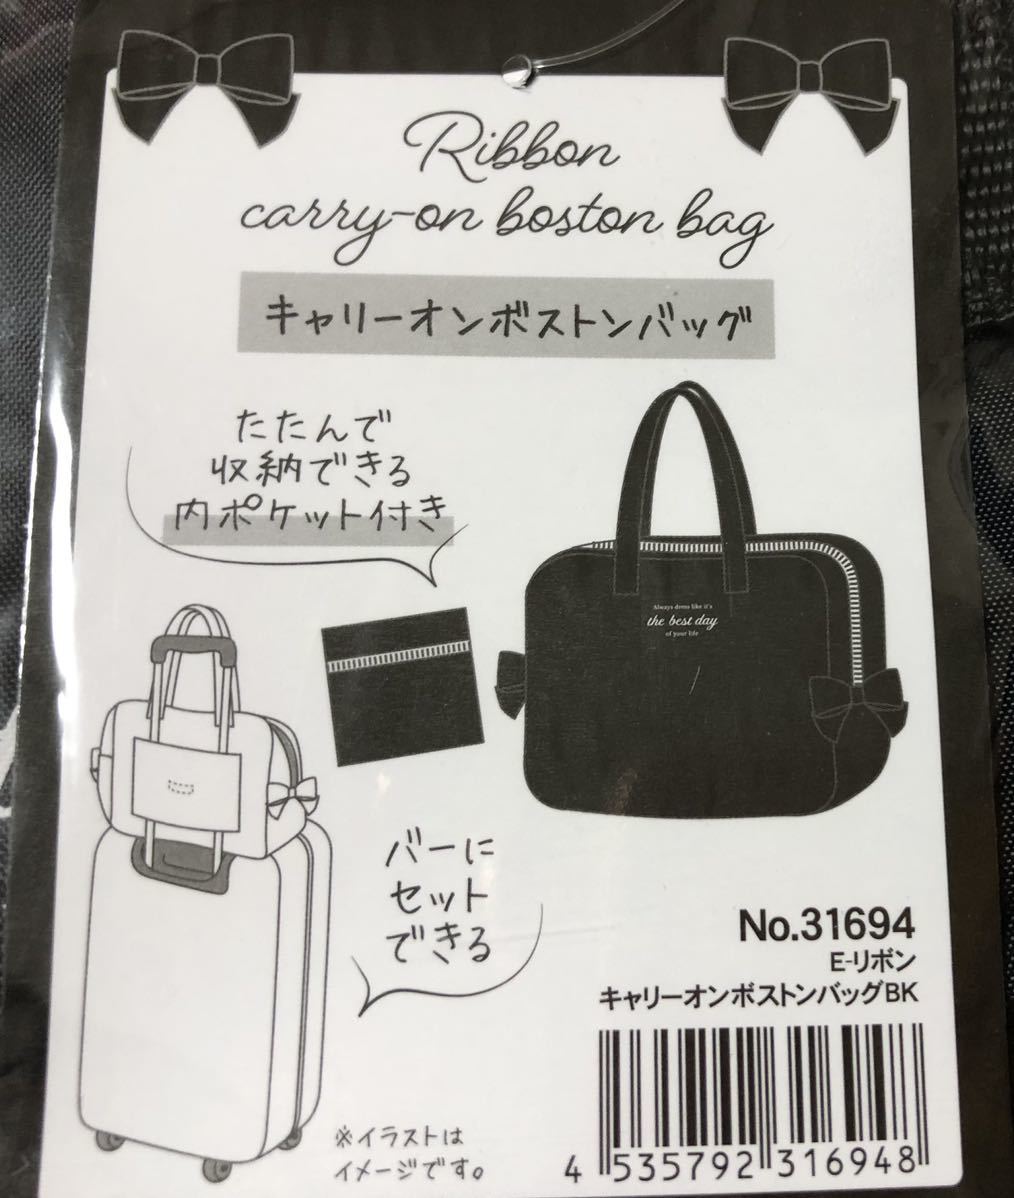 キャリーオンボストンバッグ リボン ブラック 黒 スーツケース 旅行 遠征 サブバッグ エコバッグ シンプル 可愛い Product Details Yahoo Auctions Japan Proxy Bidding And Shopping Service From Japan